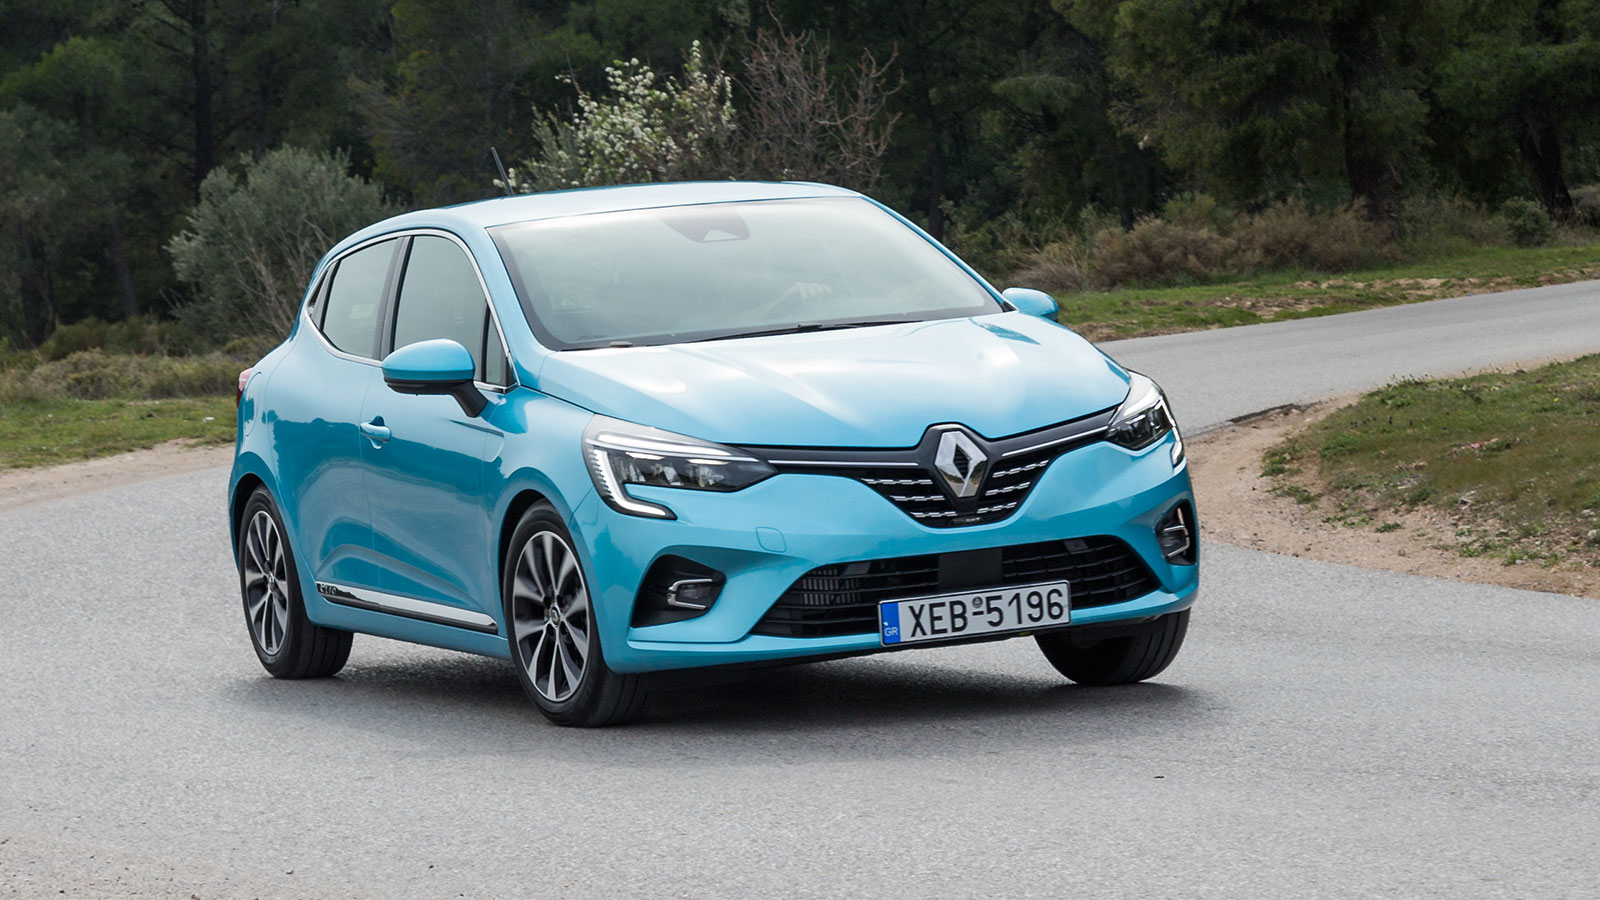 Αποκτήστε το νέο Renault Clio με όφελος έως 2.500 ευρώ 